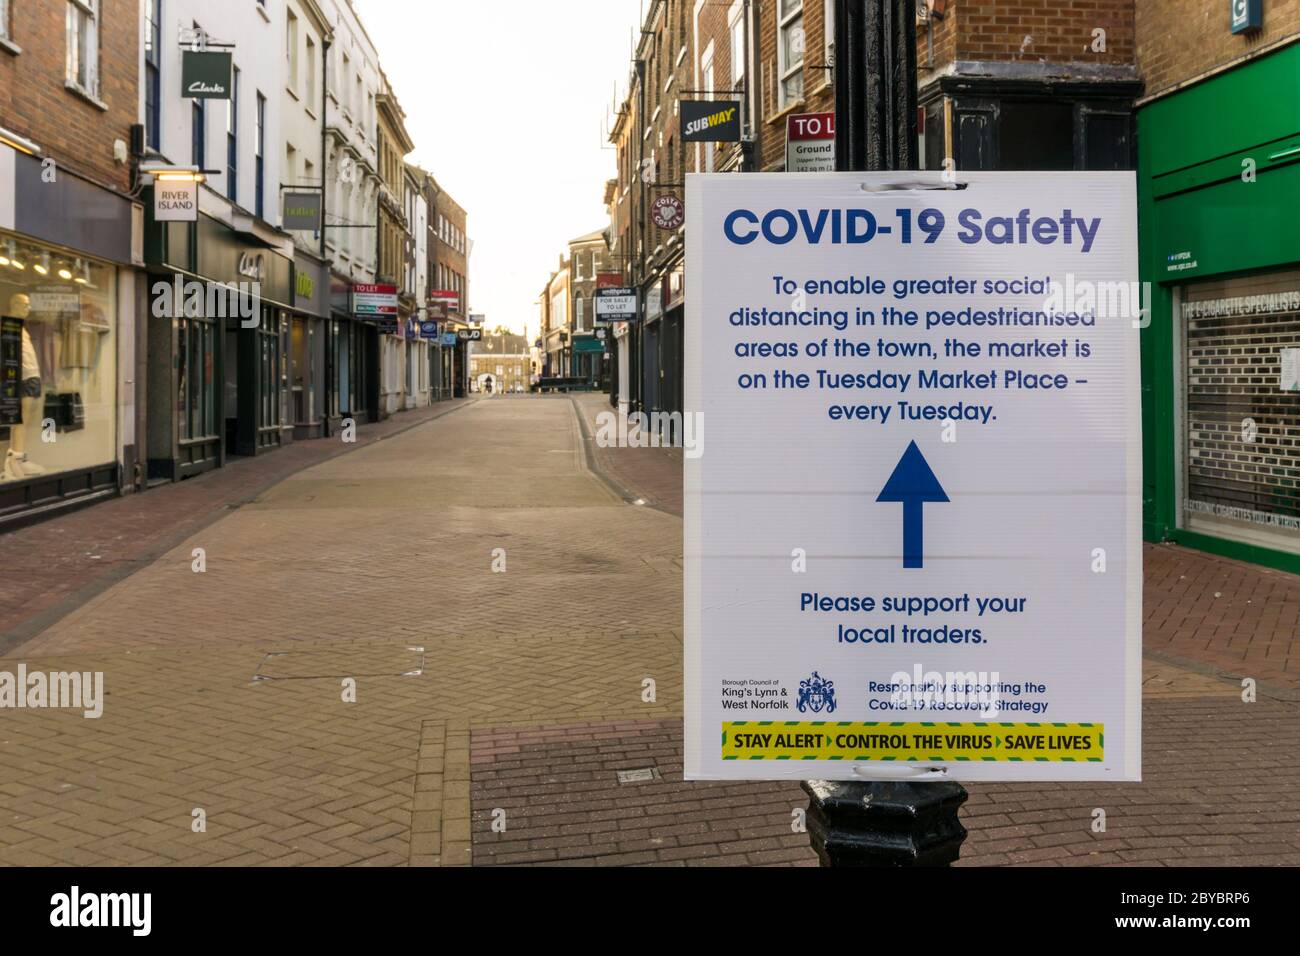 Während der 2020 Coronavirus-Pandemie King's Lynn ist Dienstag Markt wieder auf den Dienstag Marktplatz, um soziale Distanzierung in der High Street zu unterstützen. Stockfoto